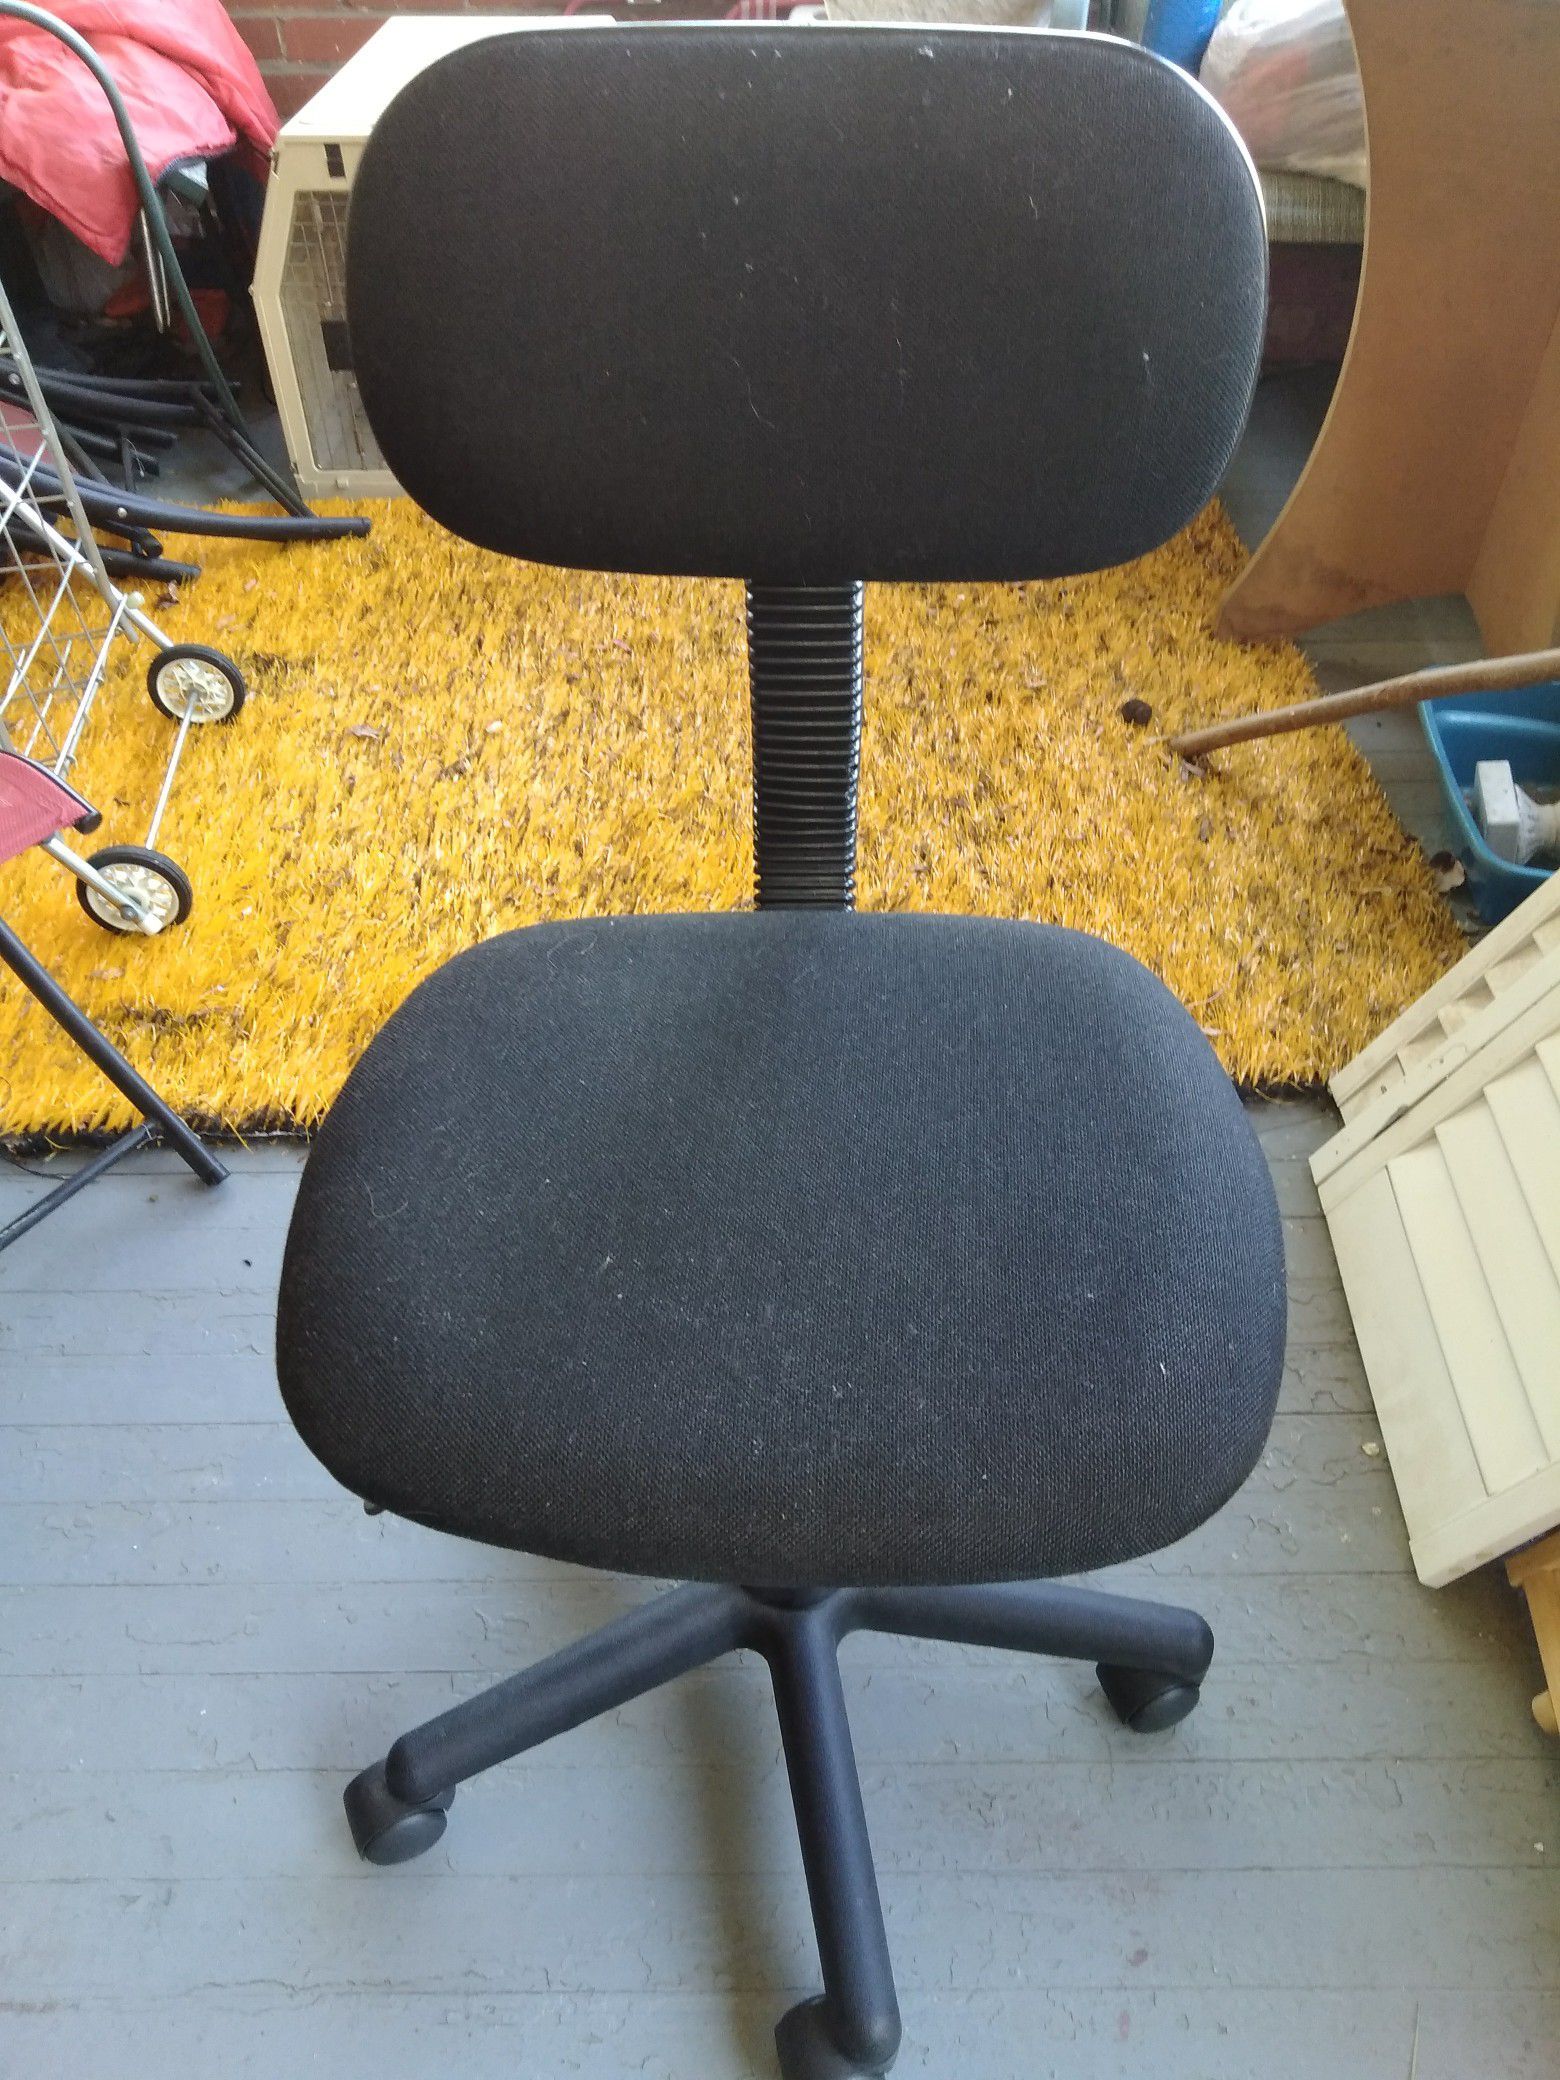 Blk. Office swiveling chair